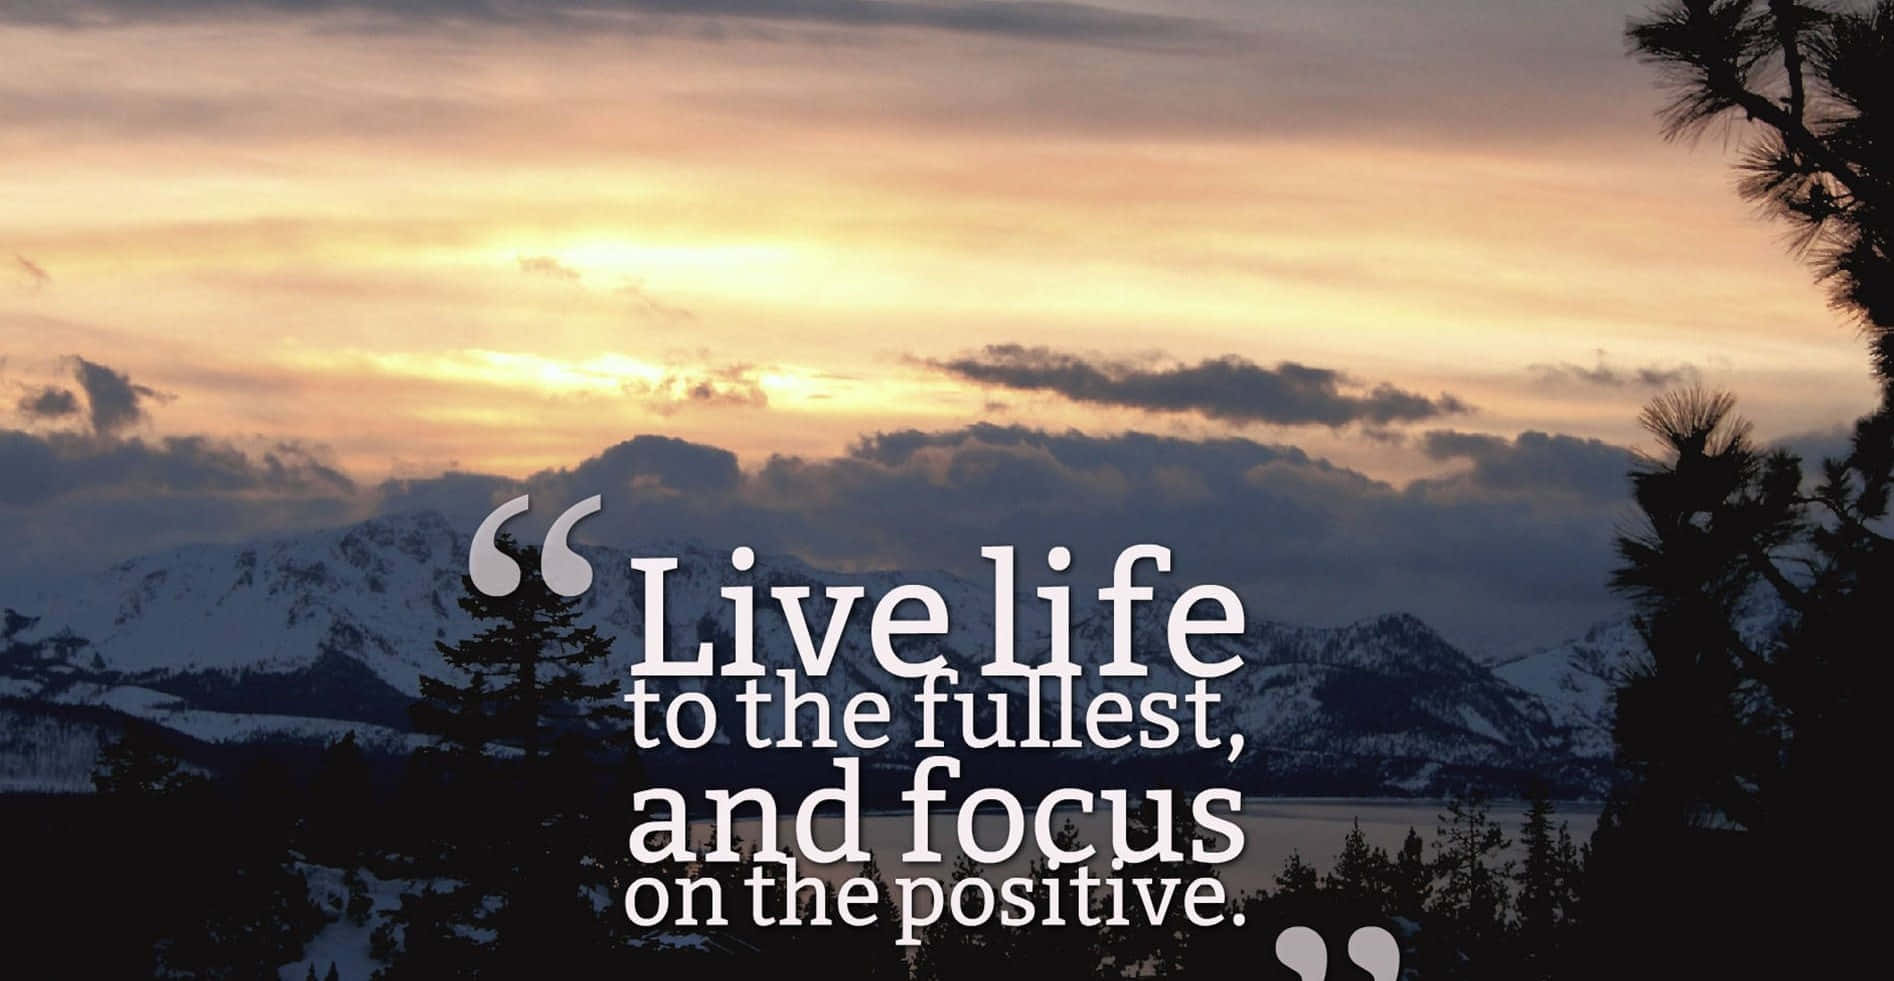 Levlivet Fuldt Ud Og Fokuser På Det Positive.